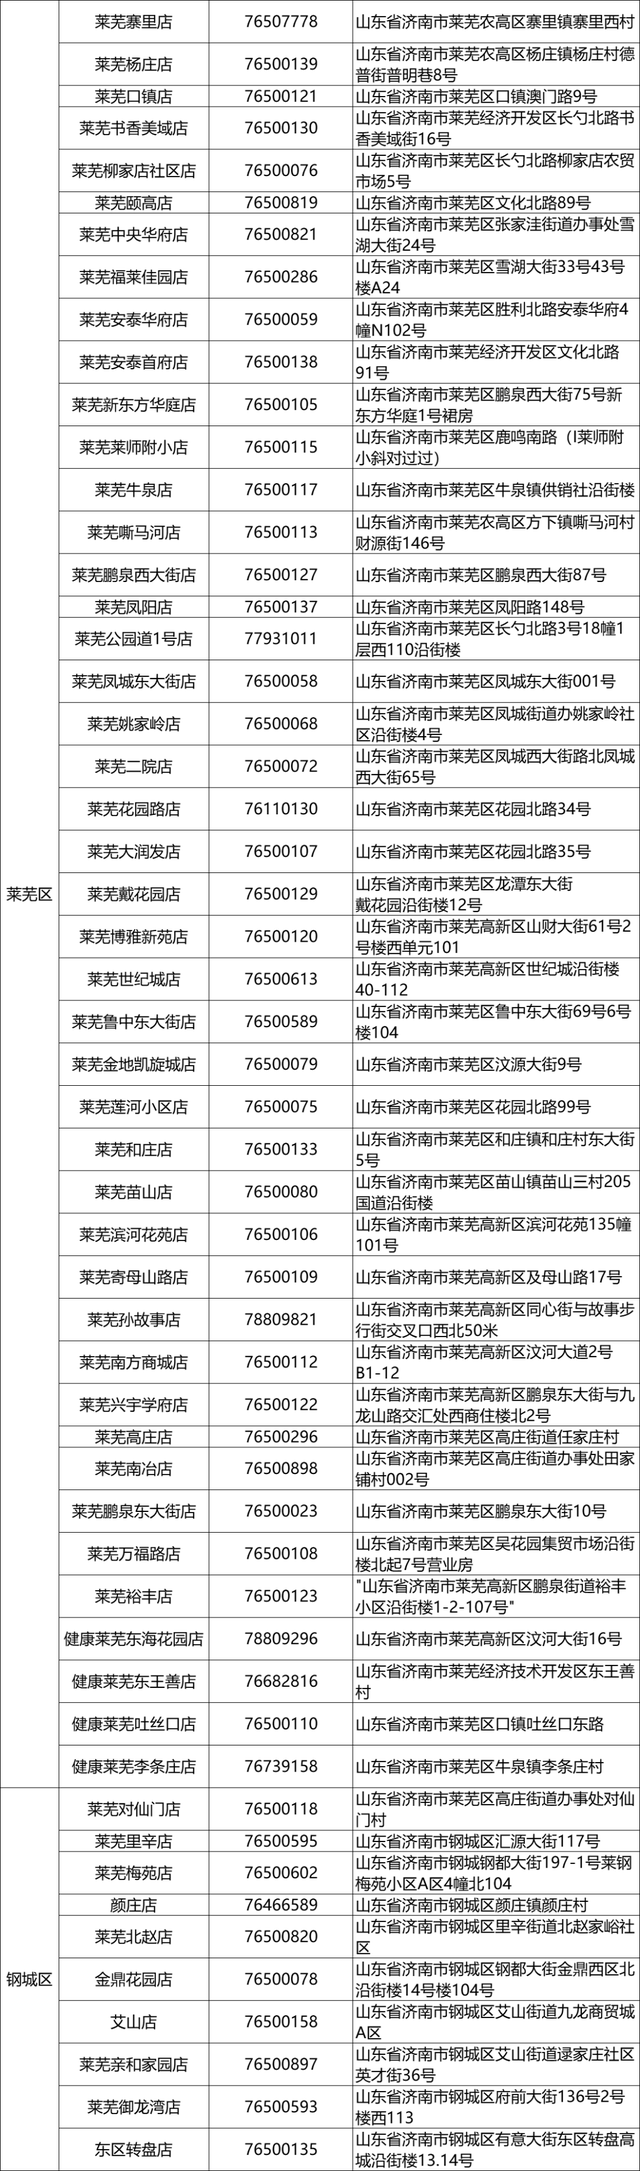 12月22日起，济南市民可免费领布洛芬，领取门店公布